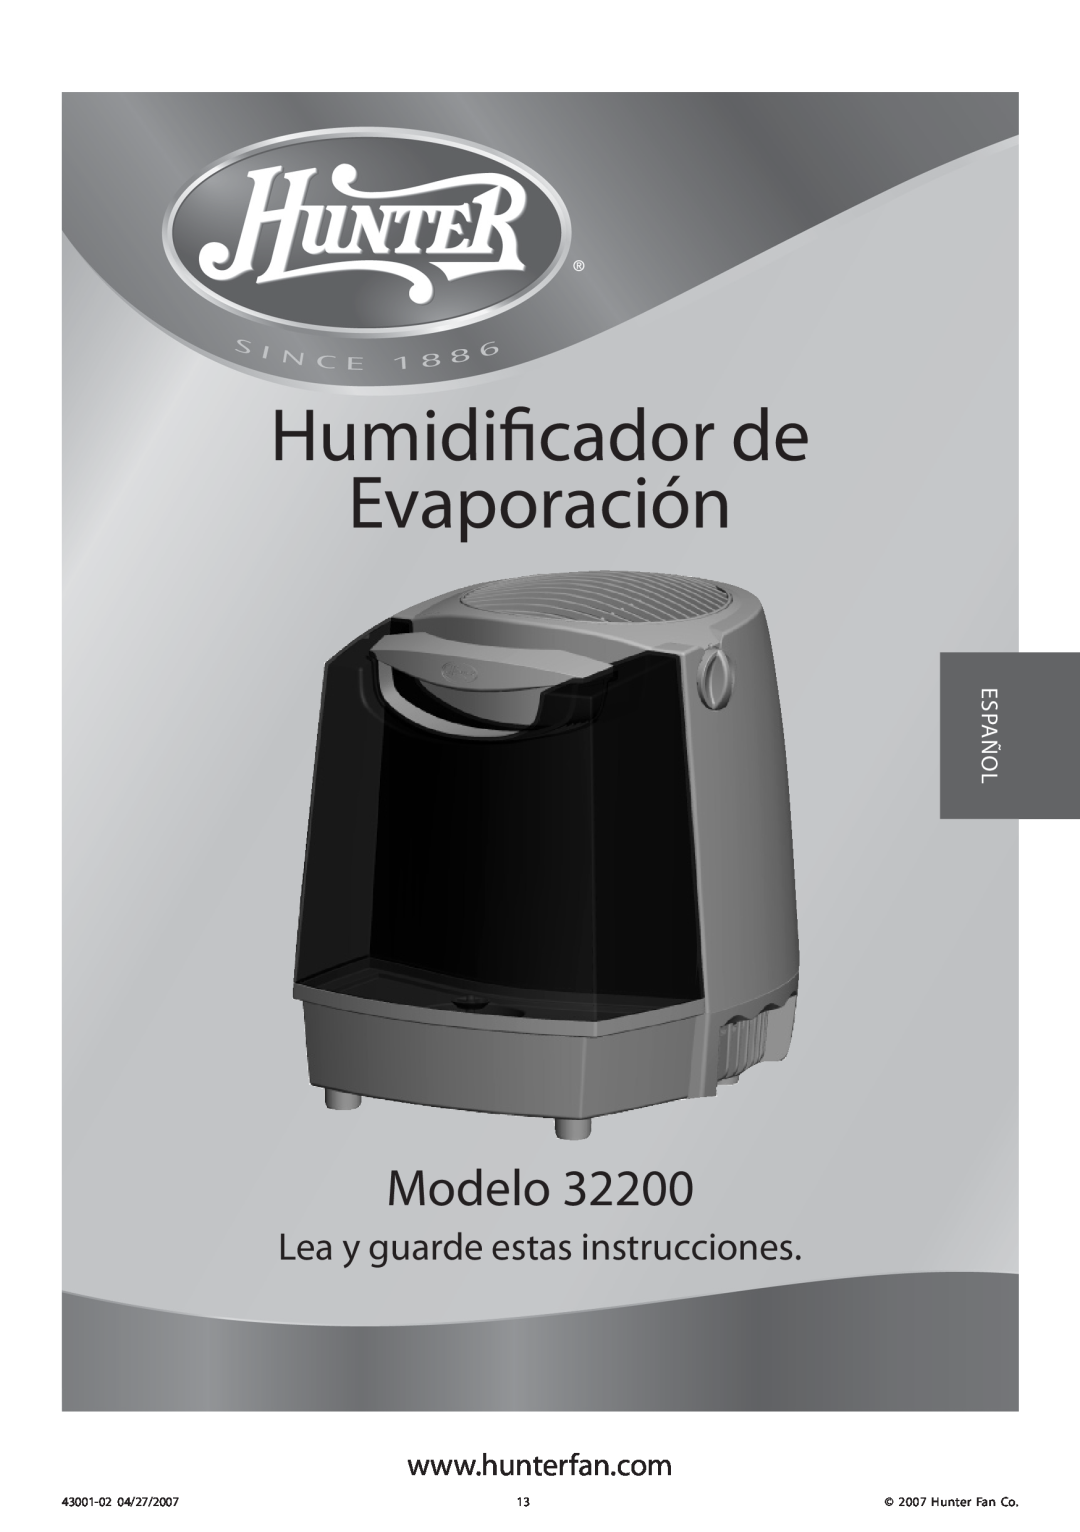 Hunter Fan 32200 manual Humidificador de Evaporación, Modelo, Lea y guarde estas instrucciones, Español, 43001-0204/27/2007 